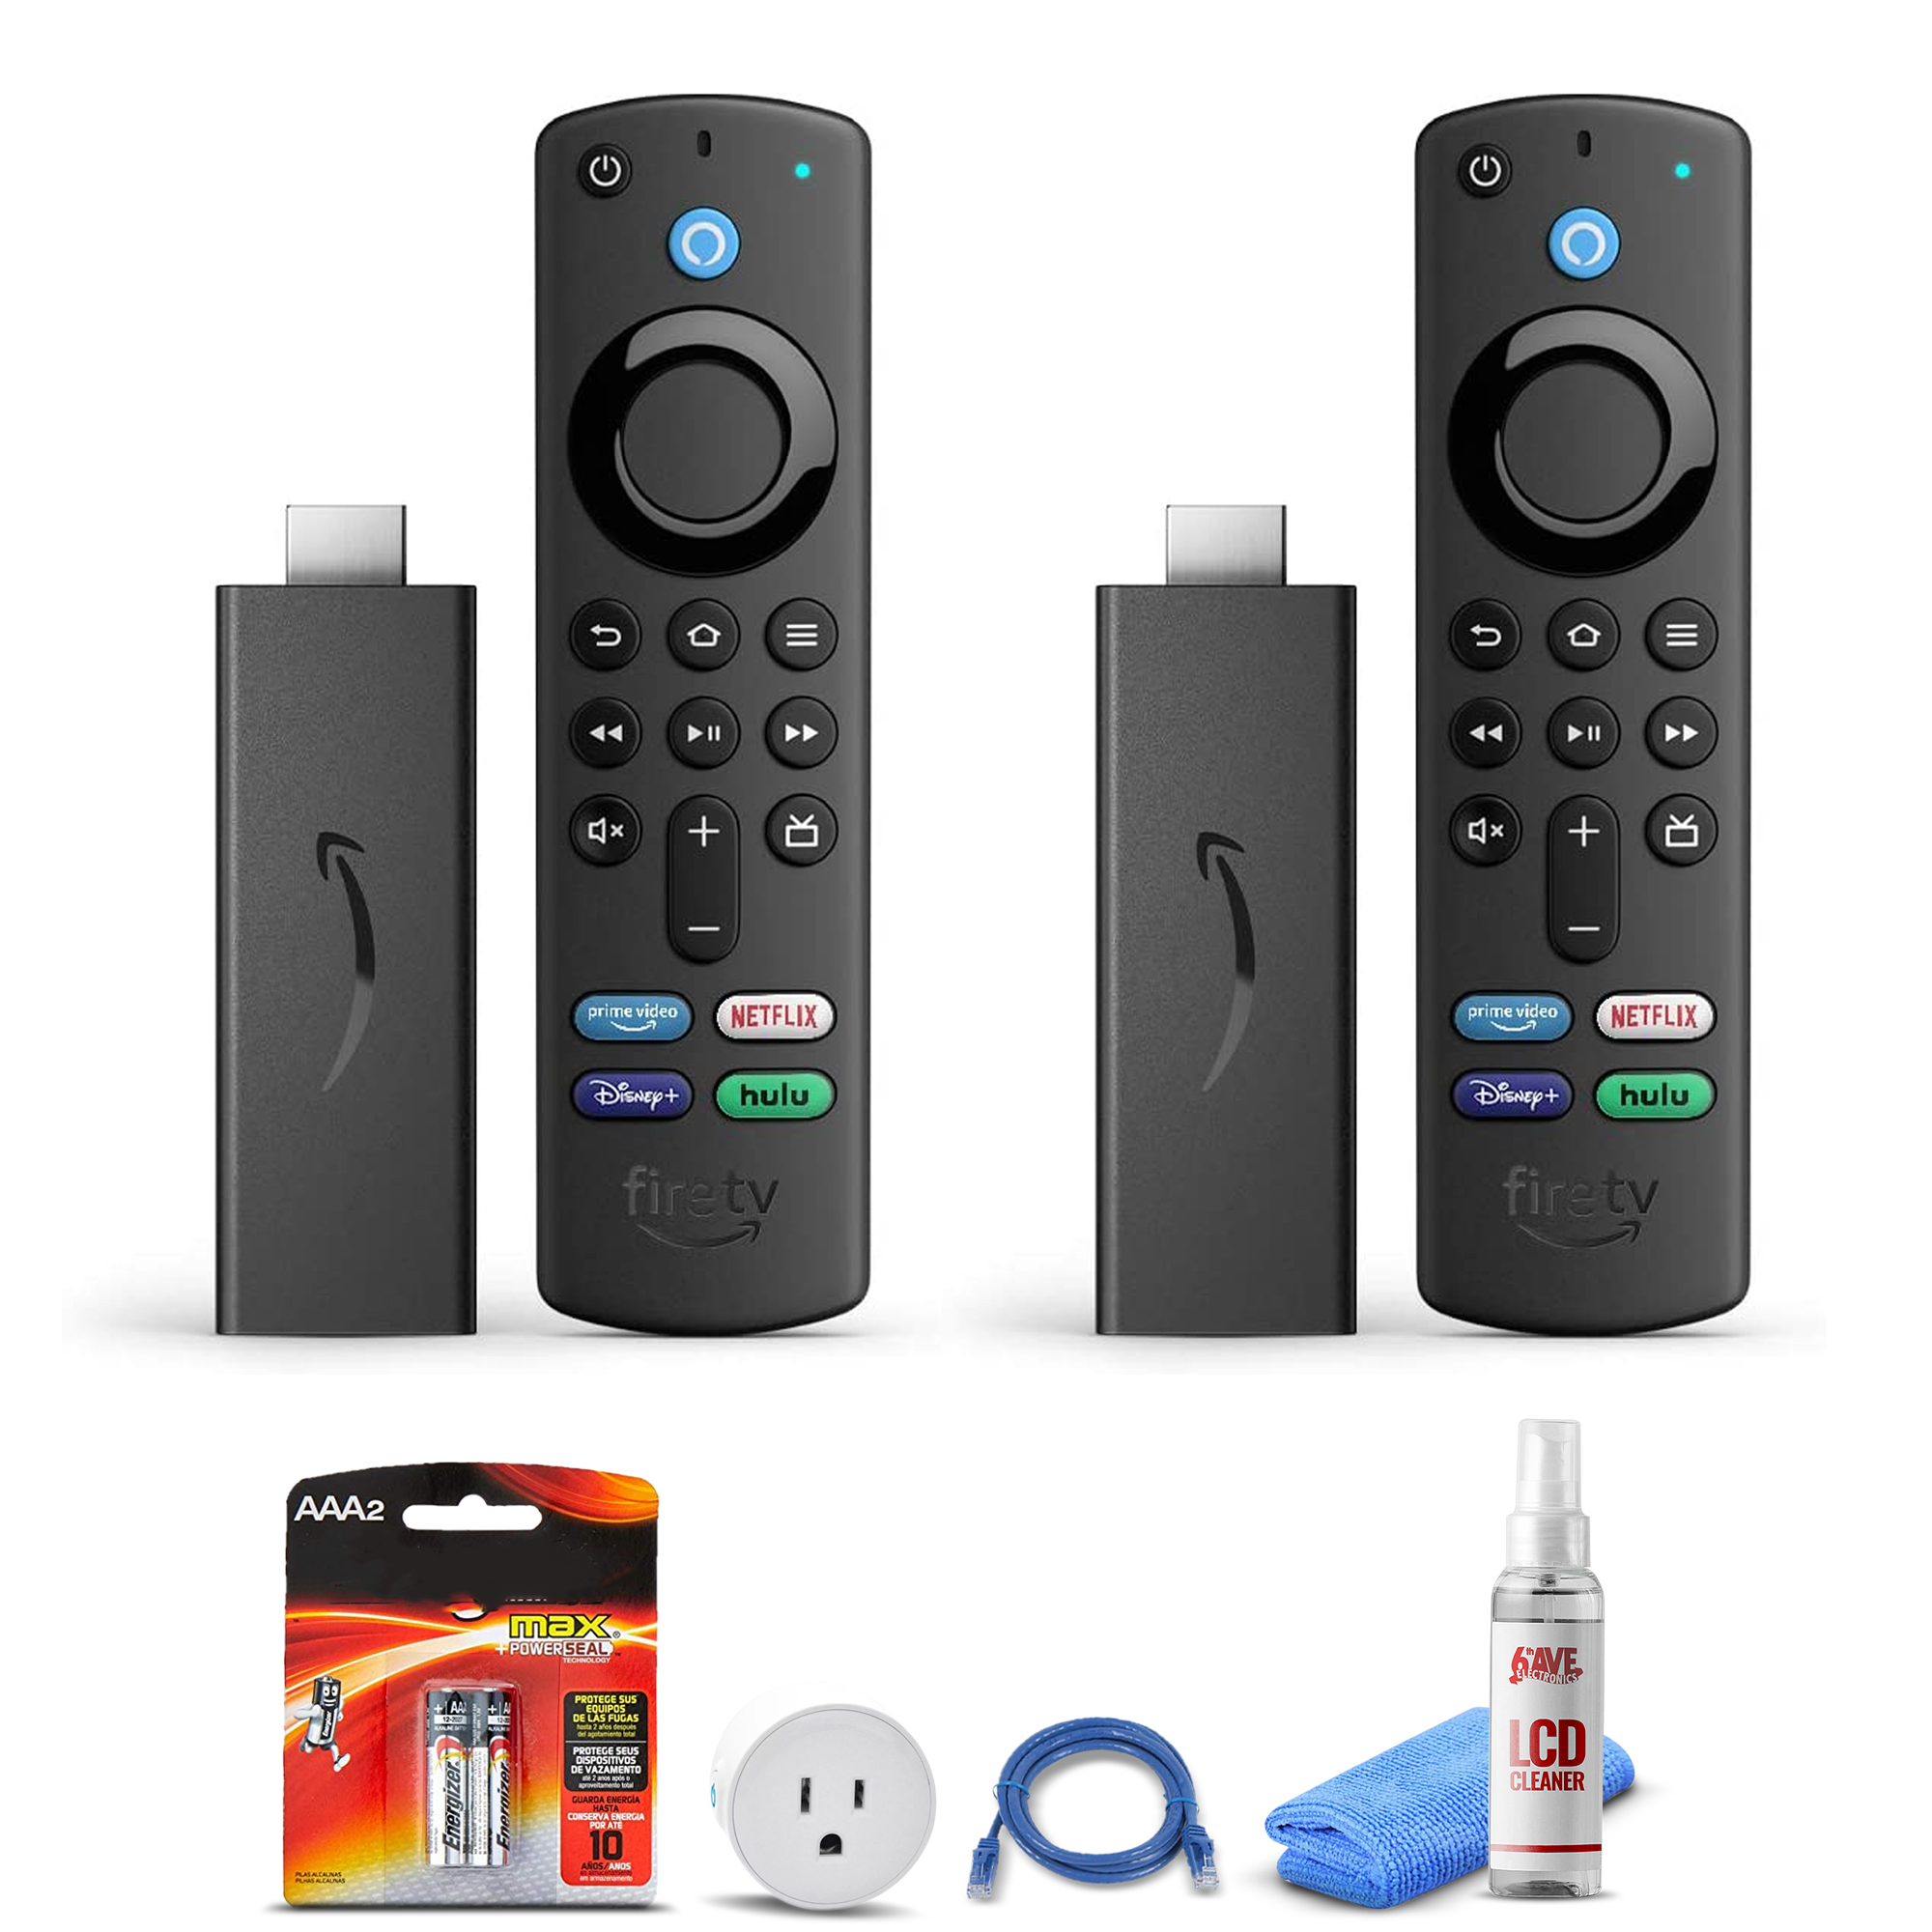 (2) Amazon Fire TV Stick (2021) + Smart Plug + Cat5 Cable + Batteries